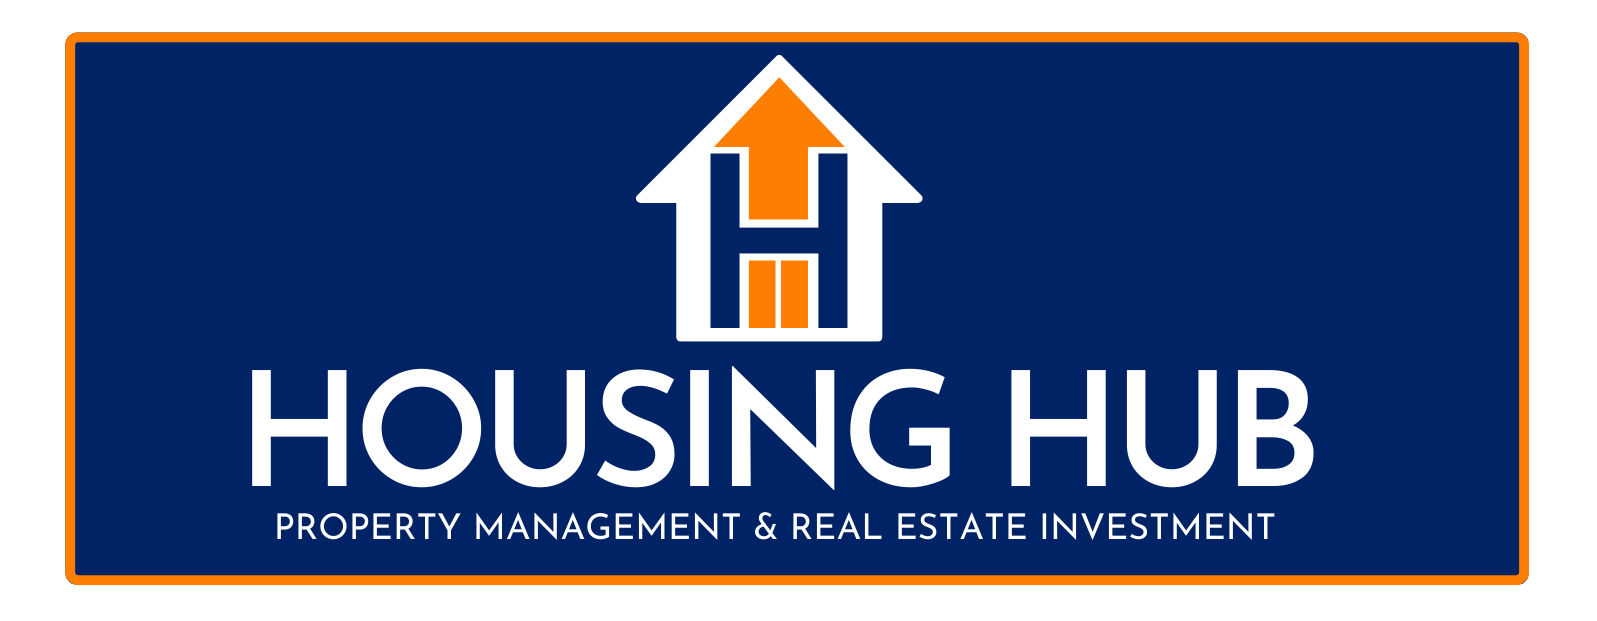 Housing Hub Header Logo - Select To Go Home